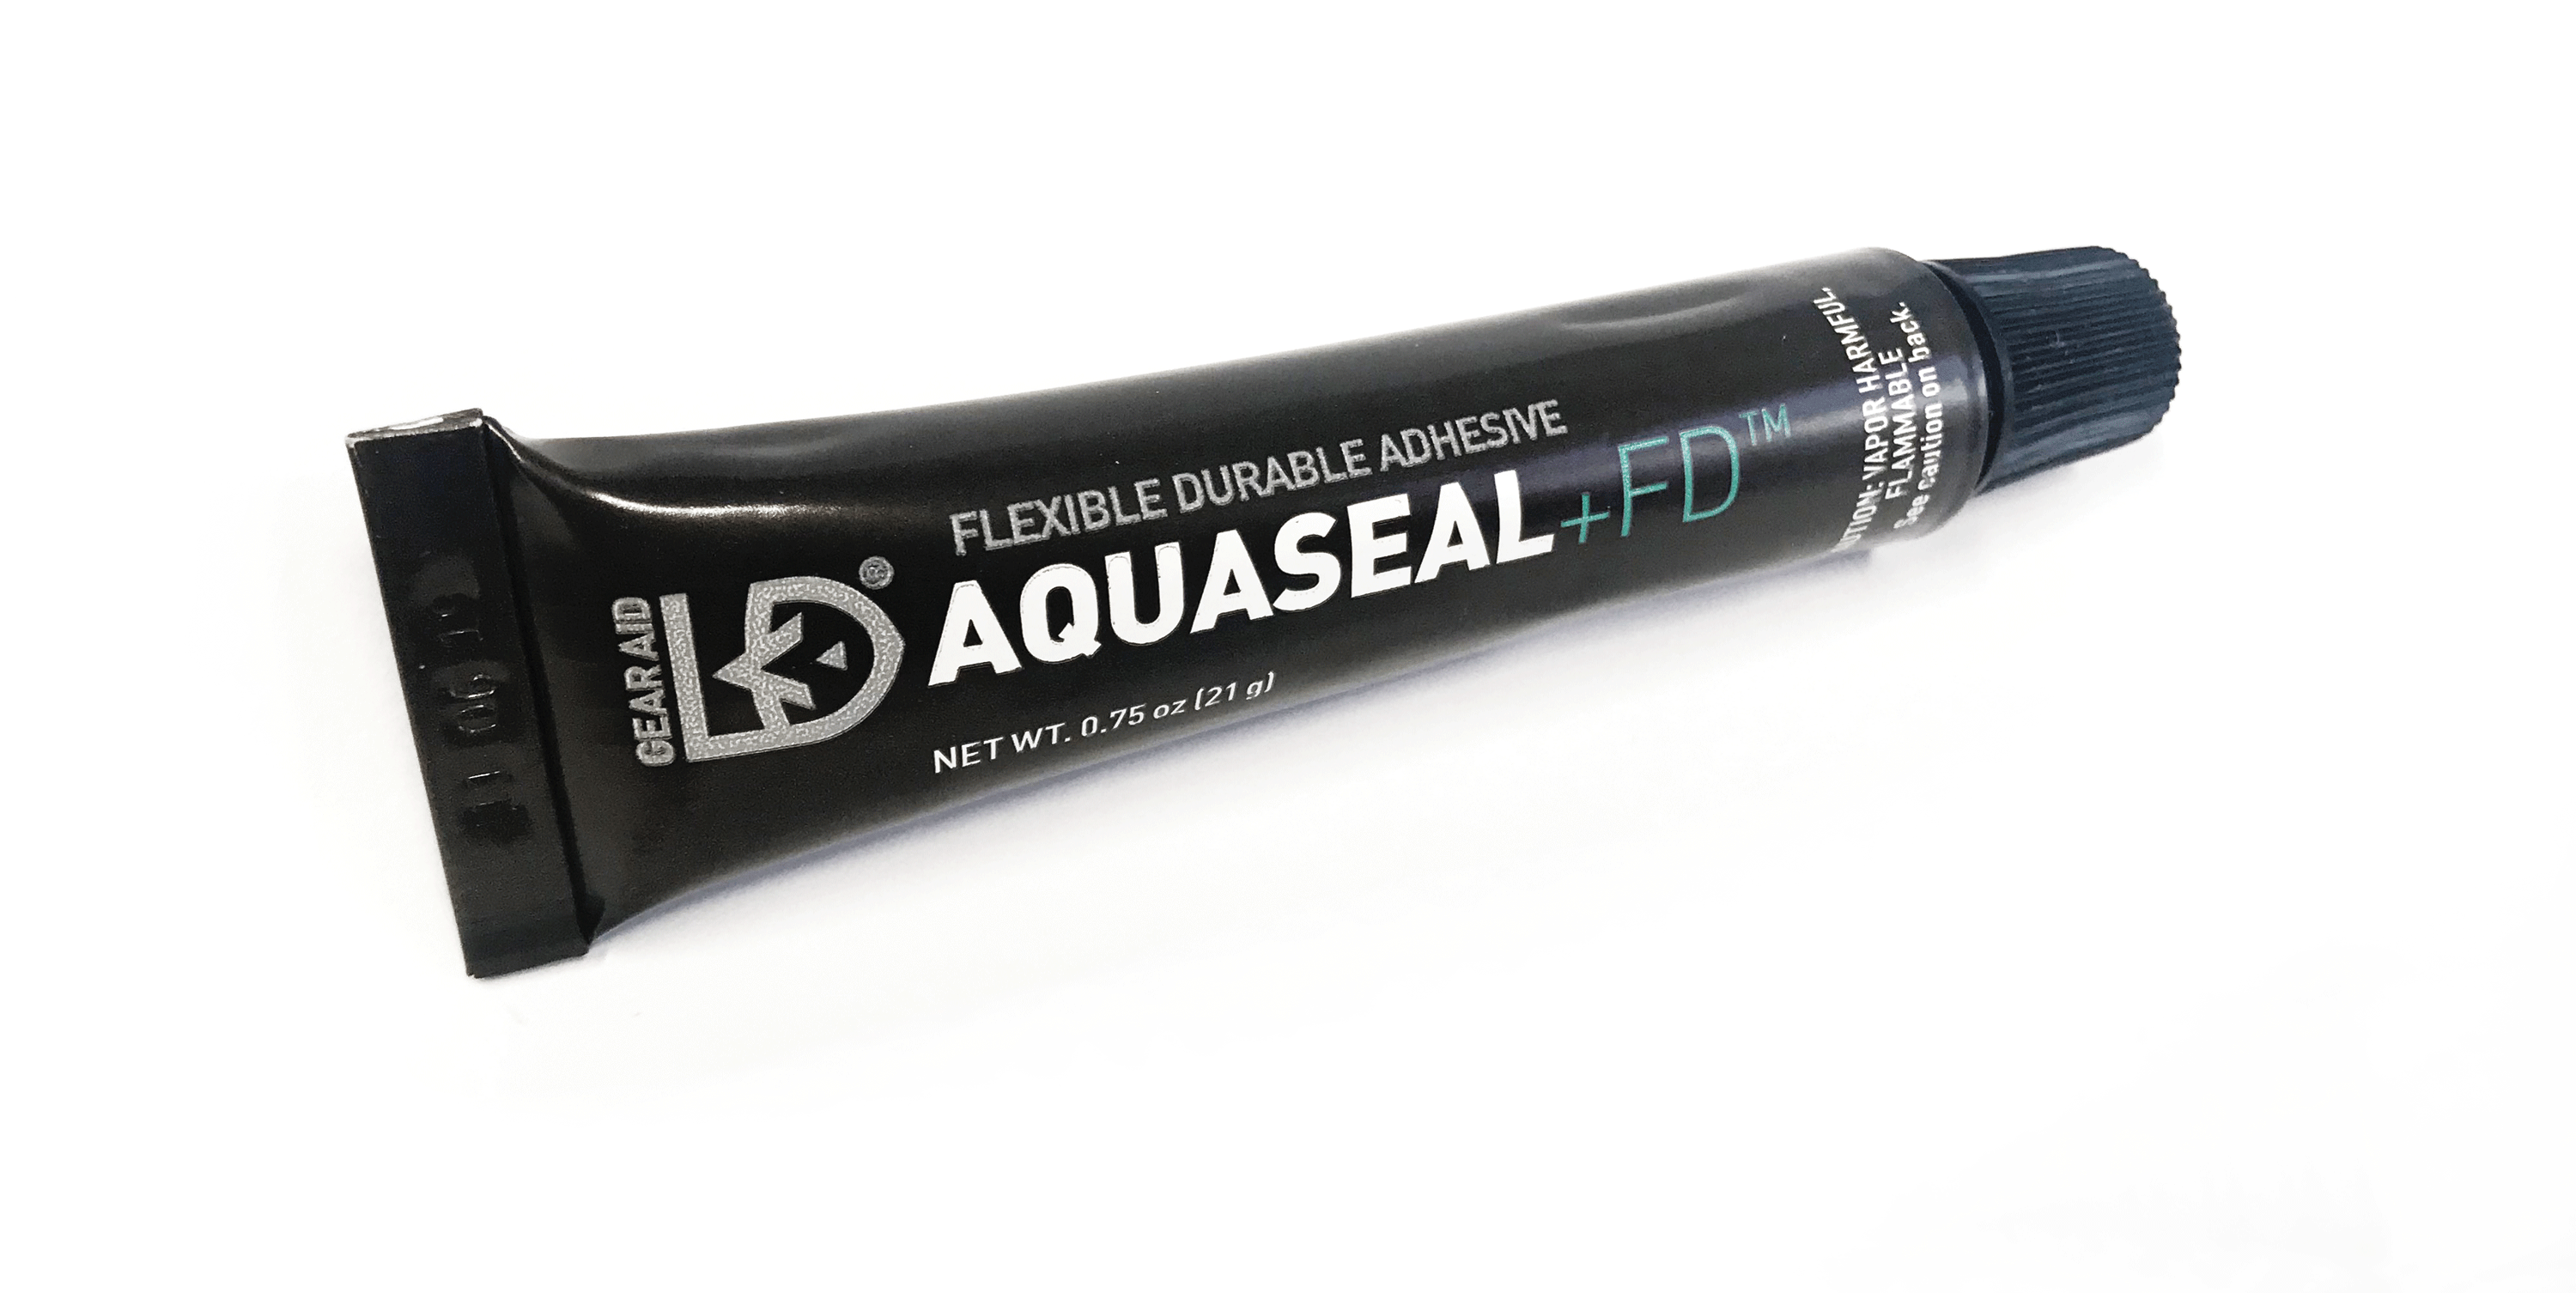 AquaSeal + FD